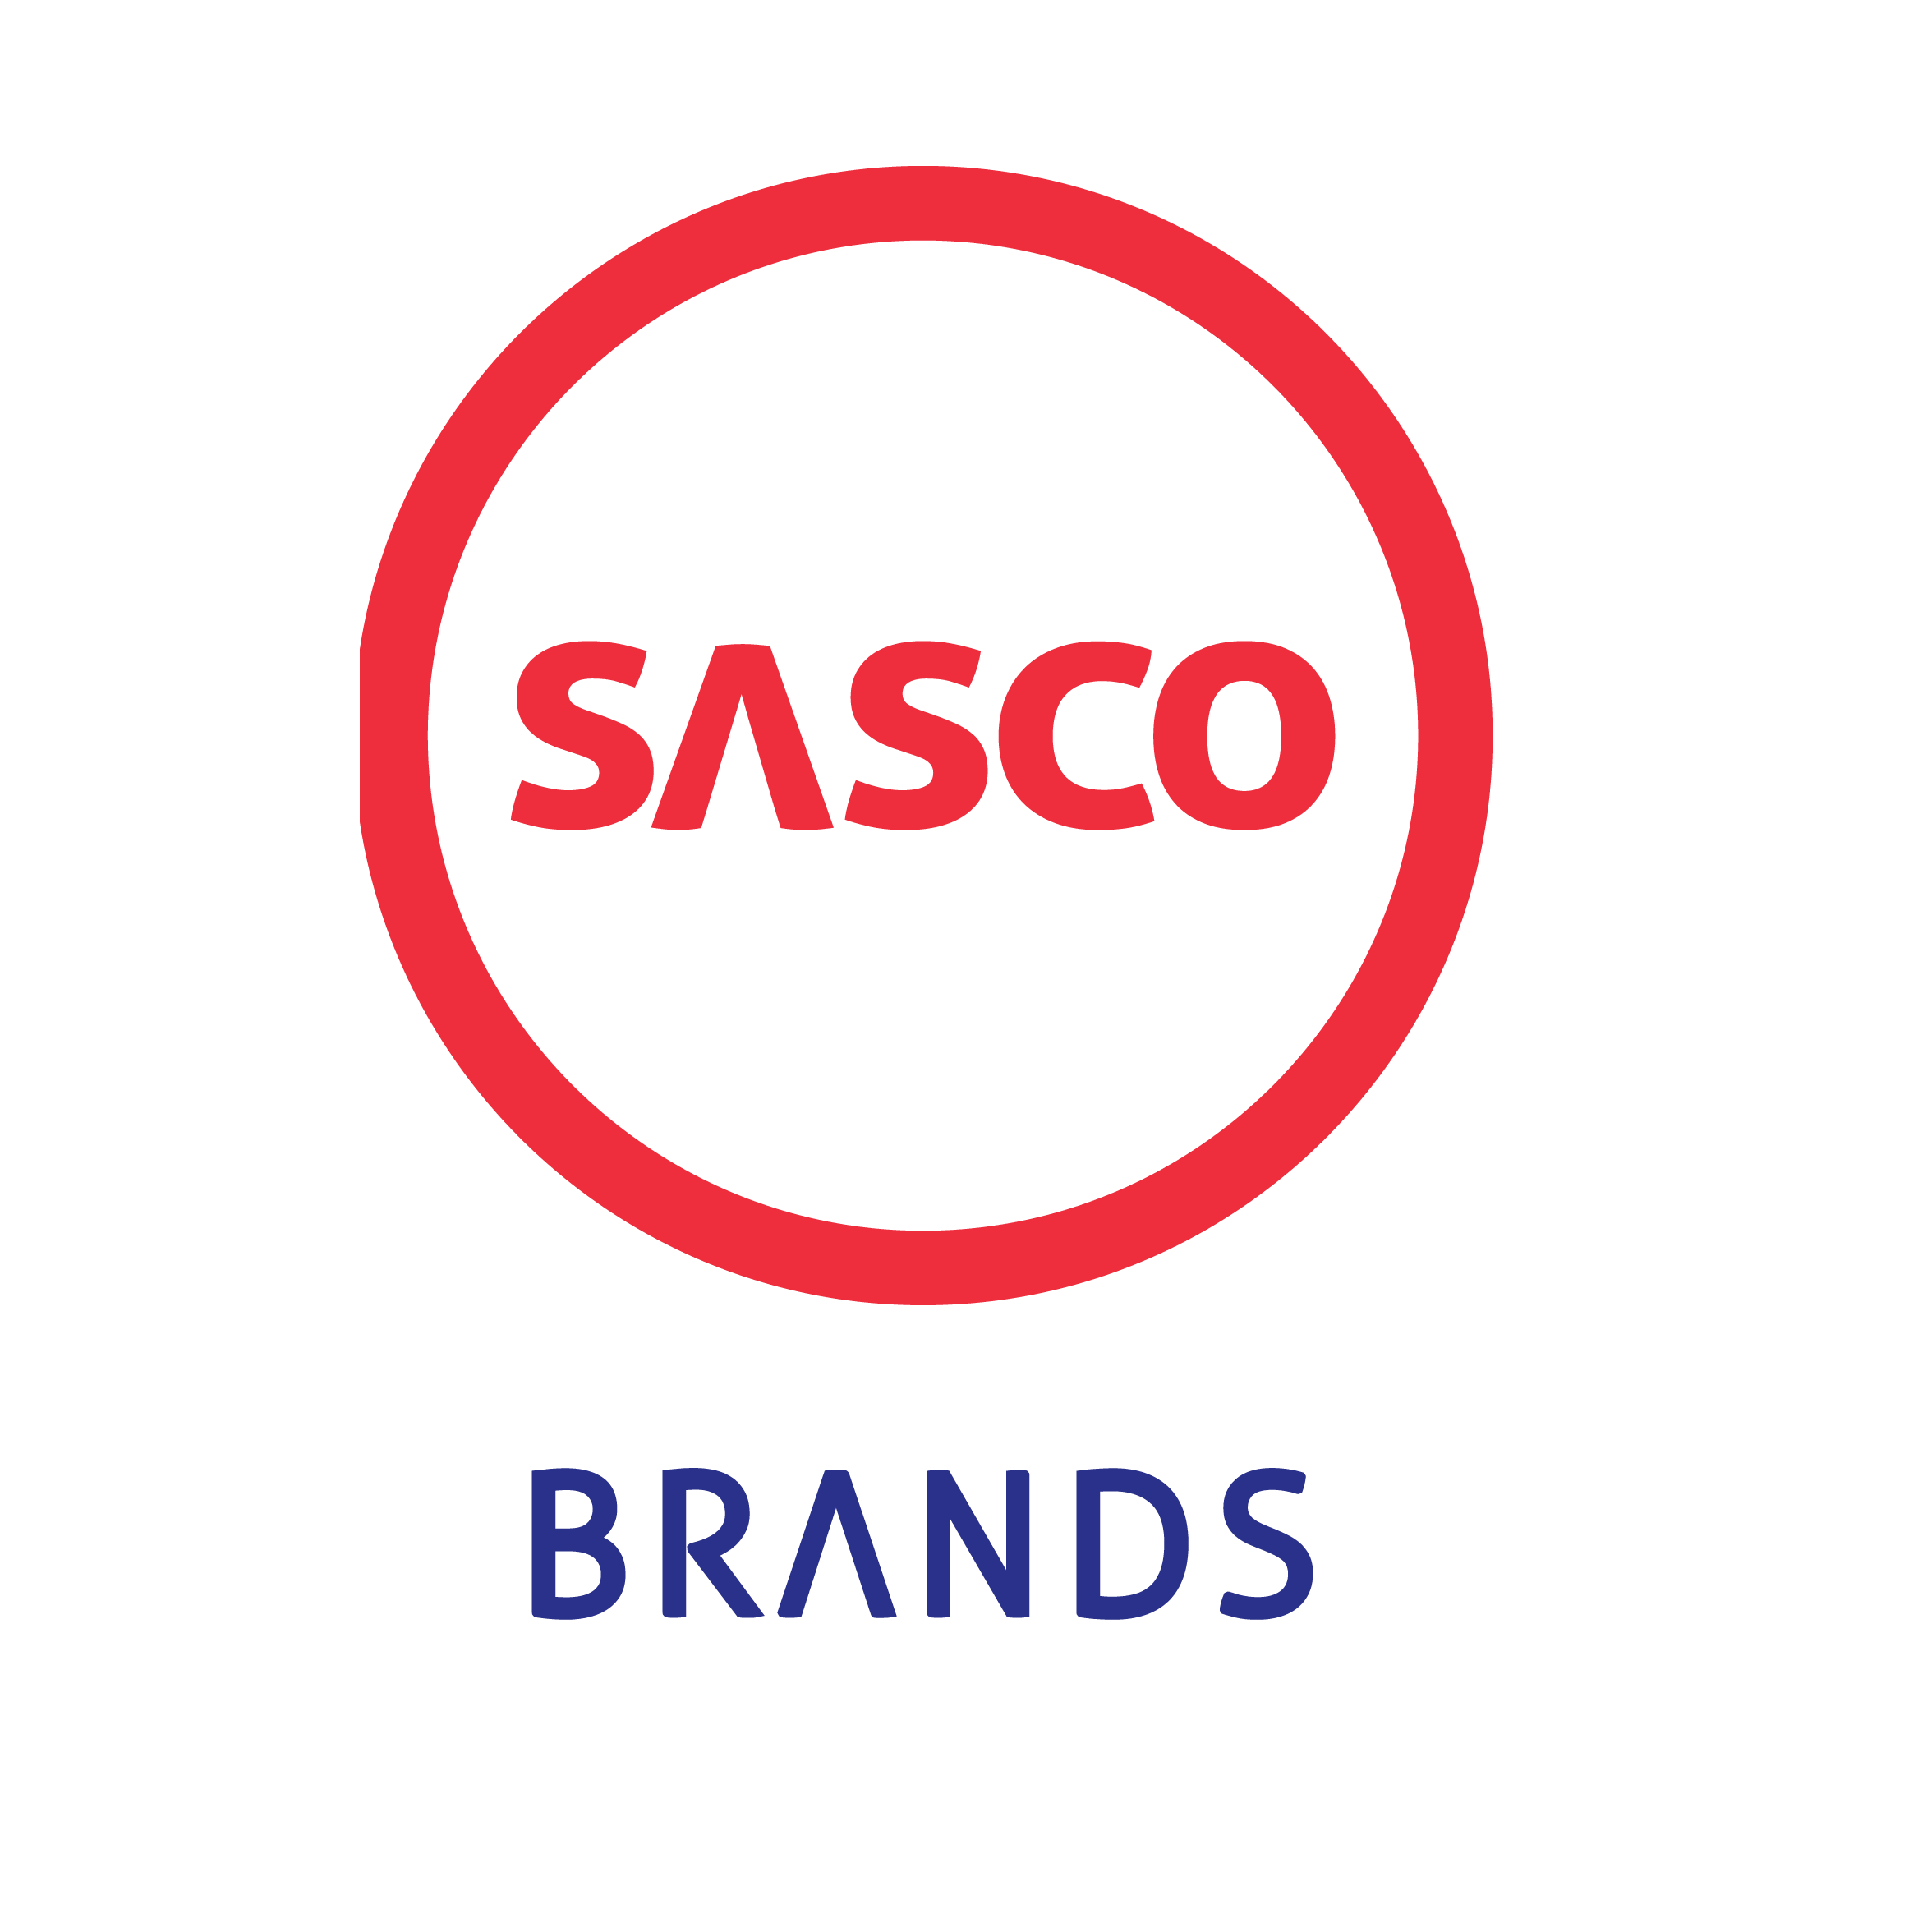 Sasco Group